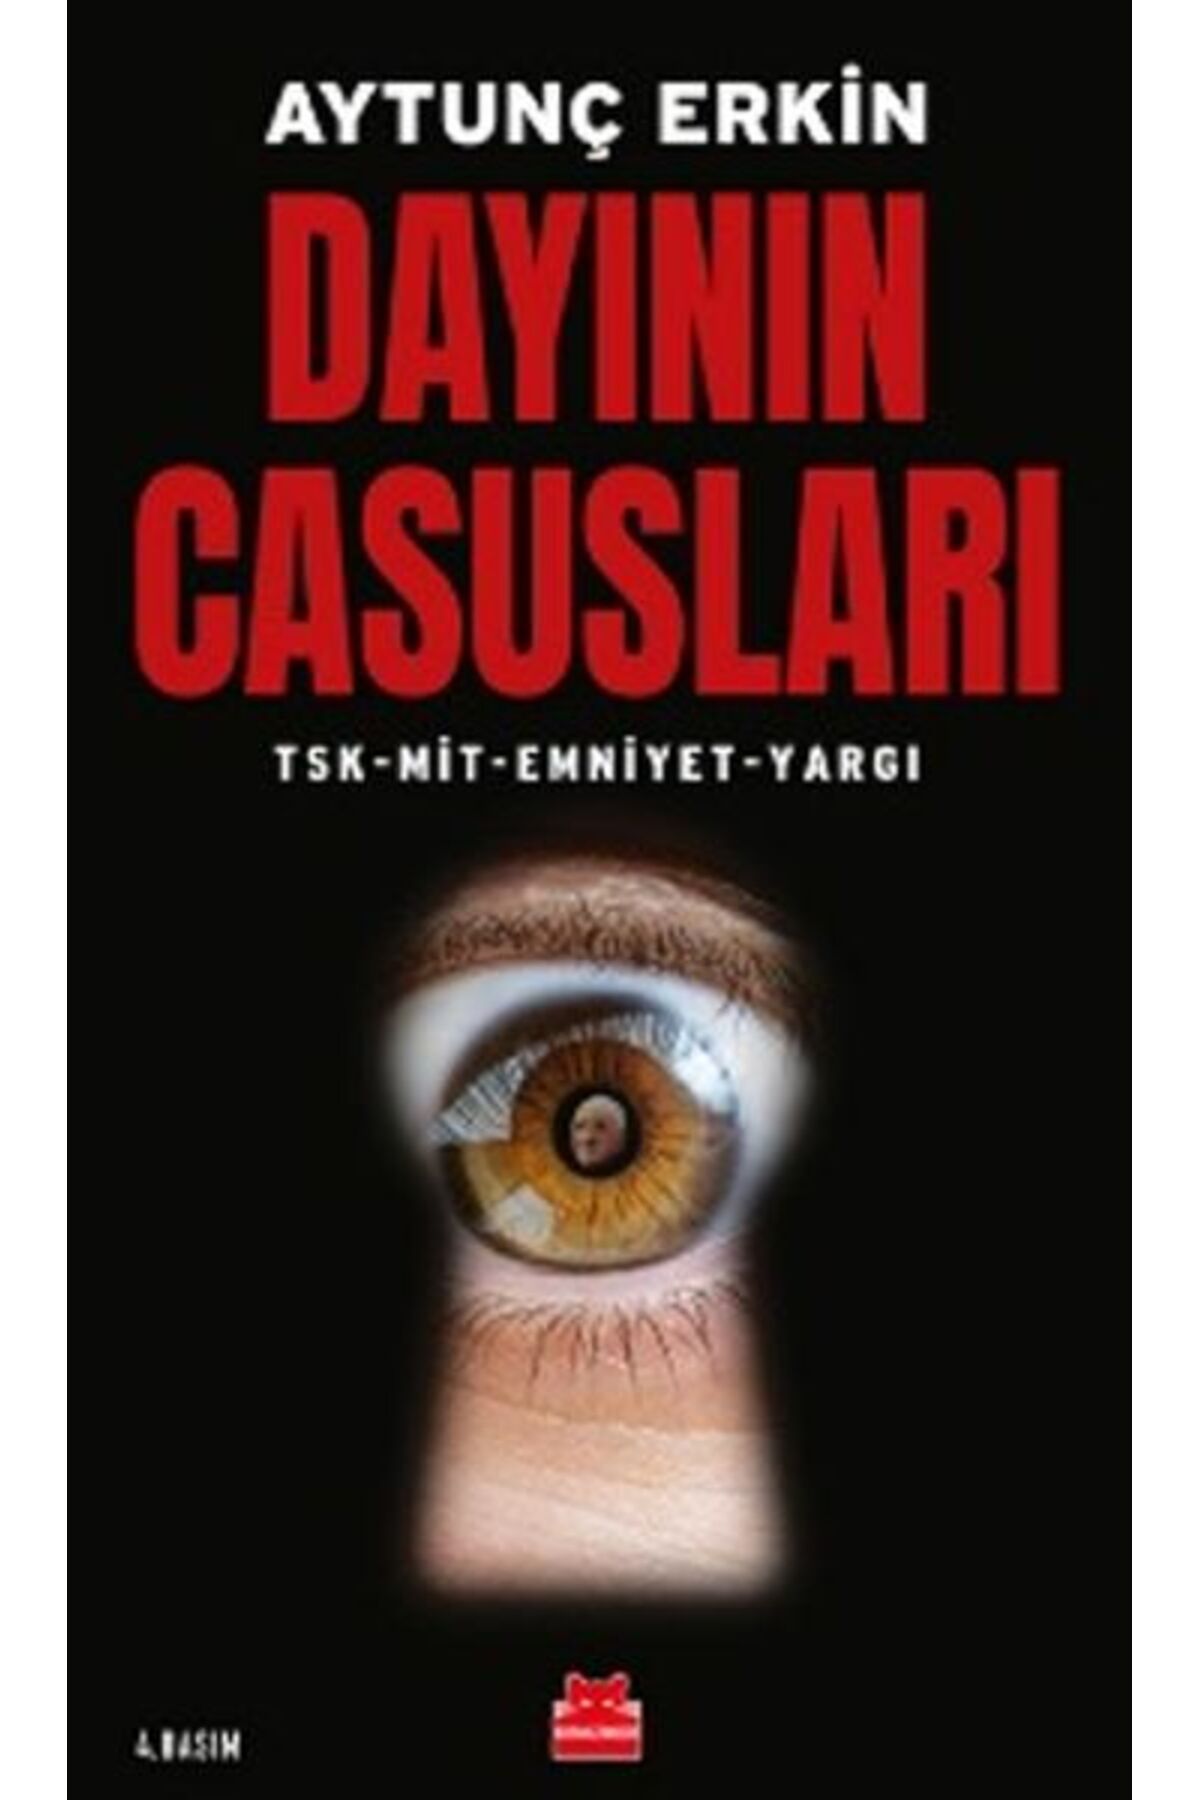 Kırmızı Kedi Yayınları Dayının Casusları - TSK-MİT-Emniyet-Yargı